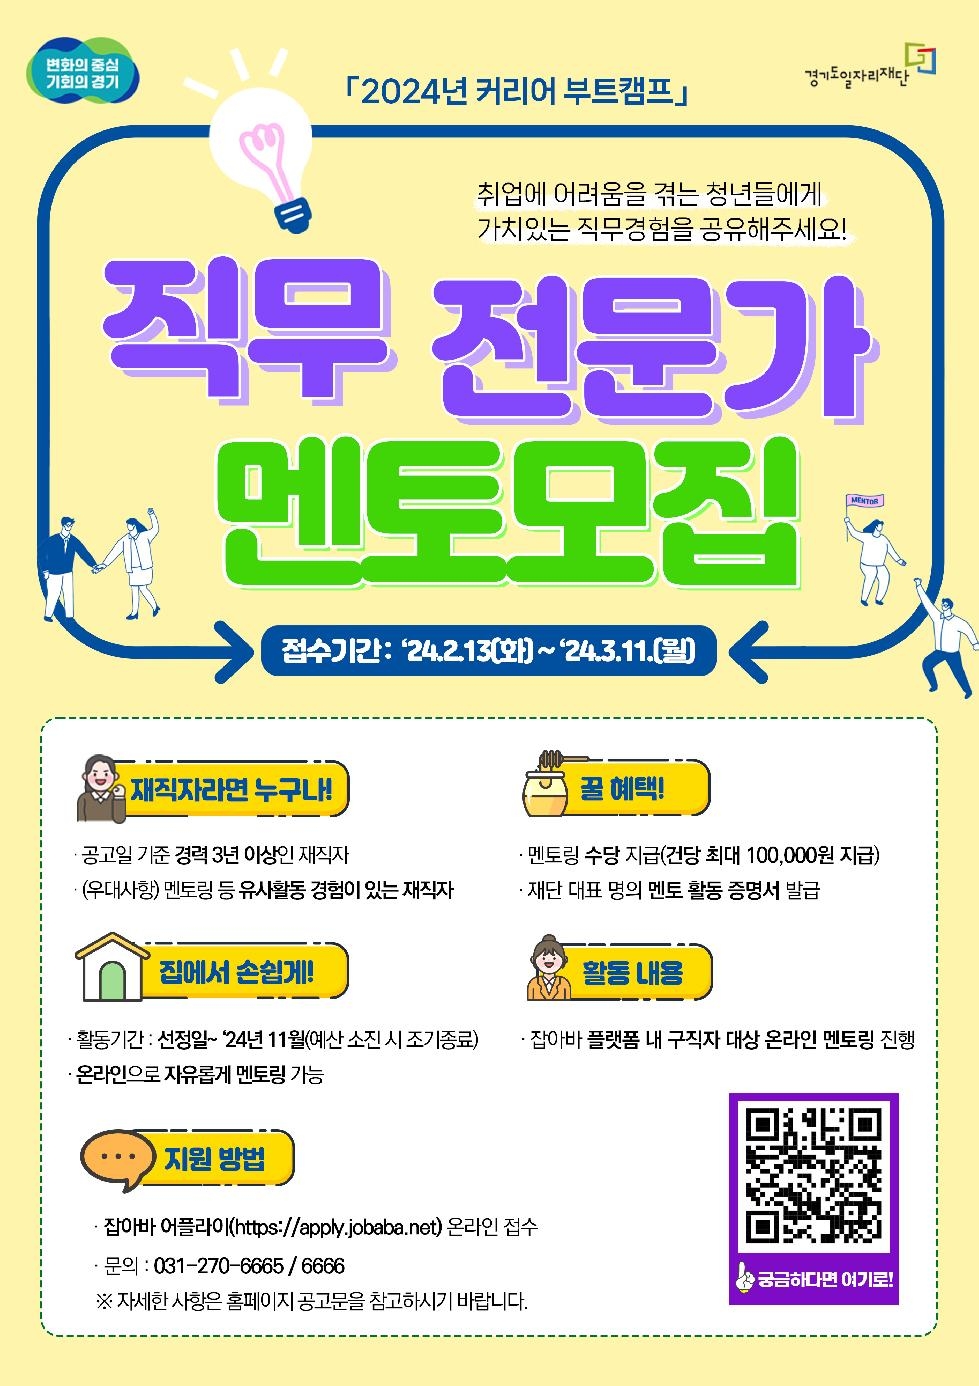 경기도,커리어 부트캠프 온라인 멘토링 참여자 80명  내달 11일까지 모